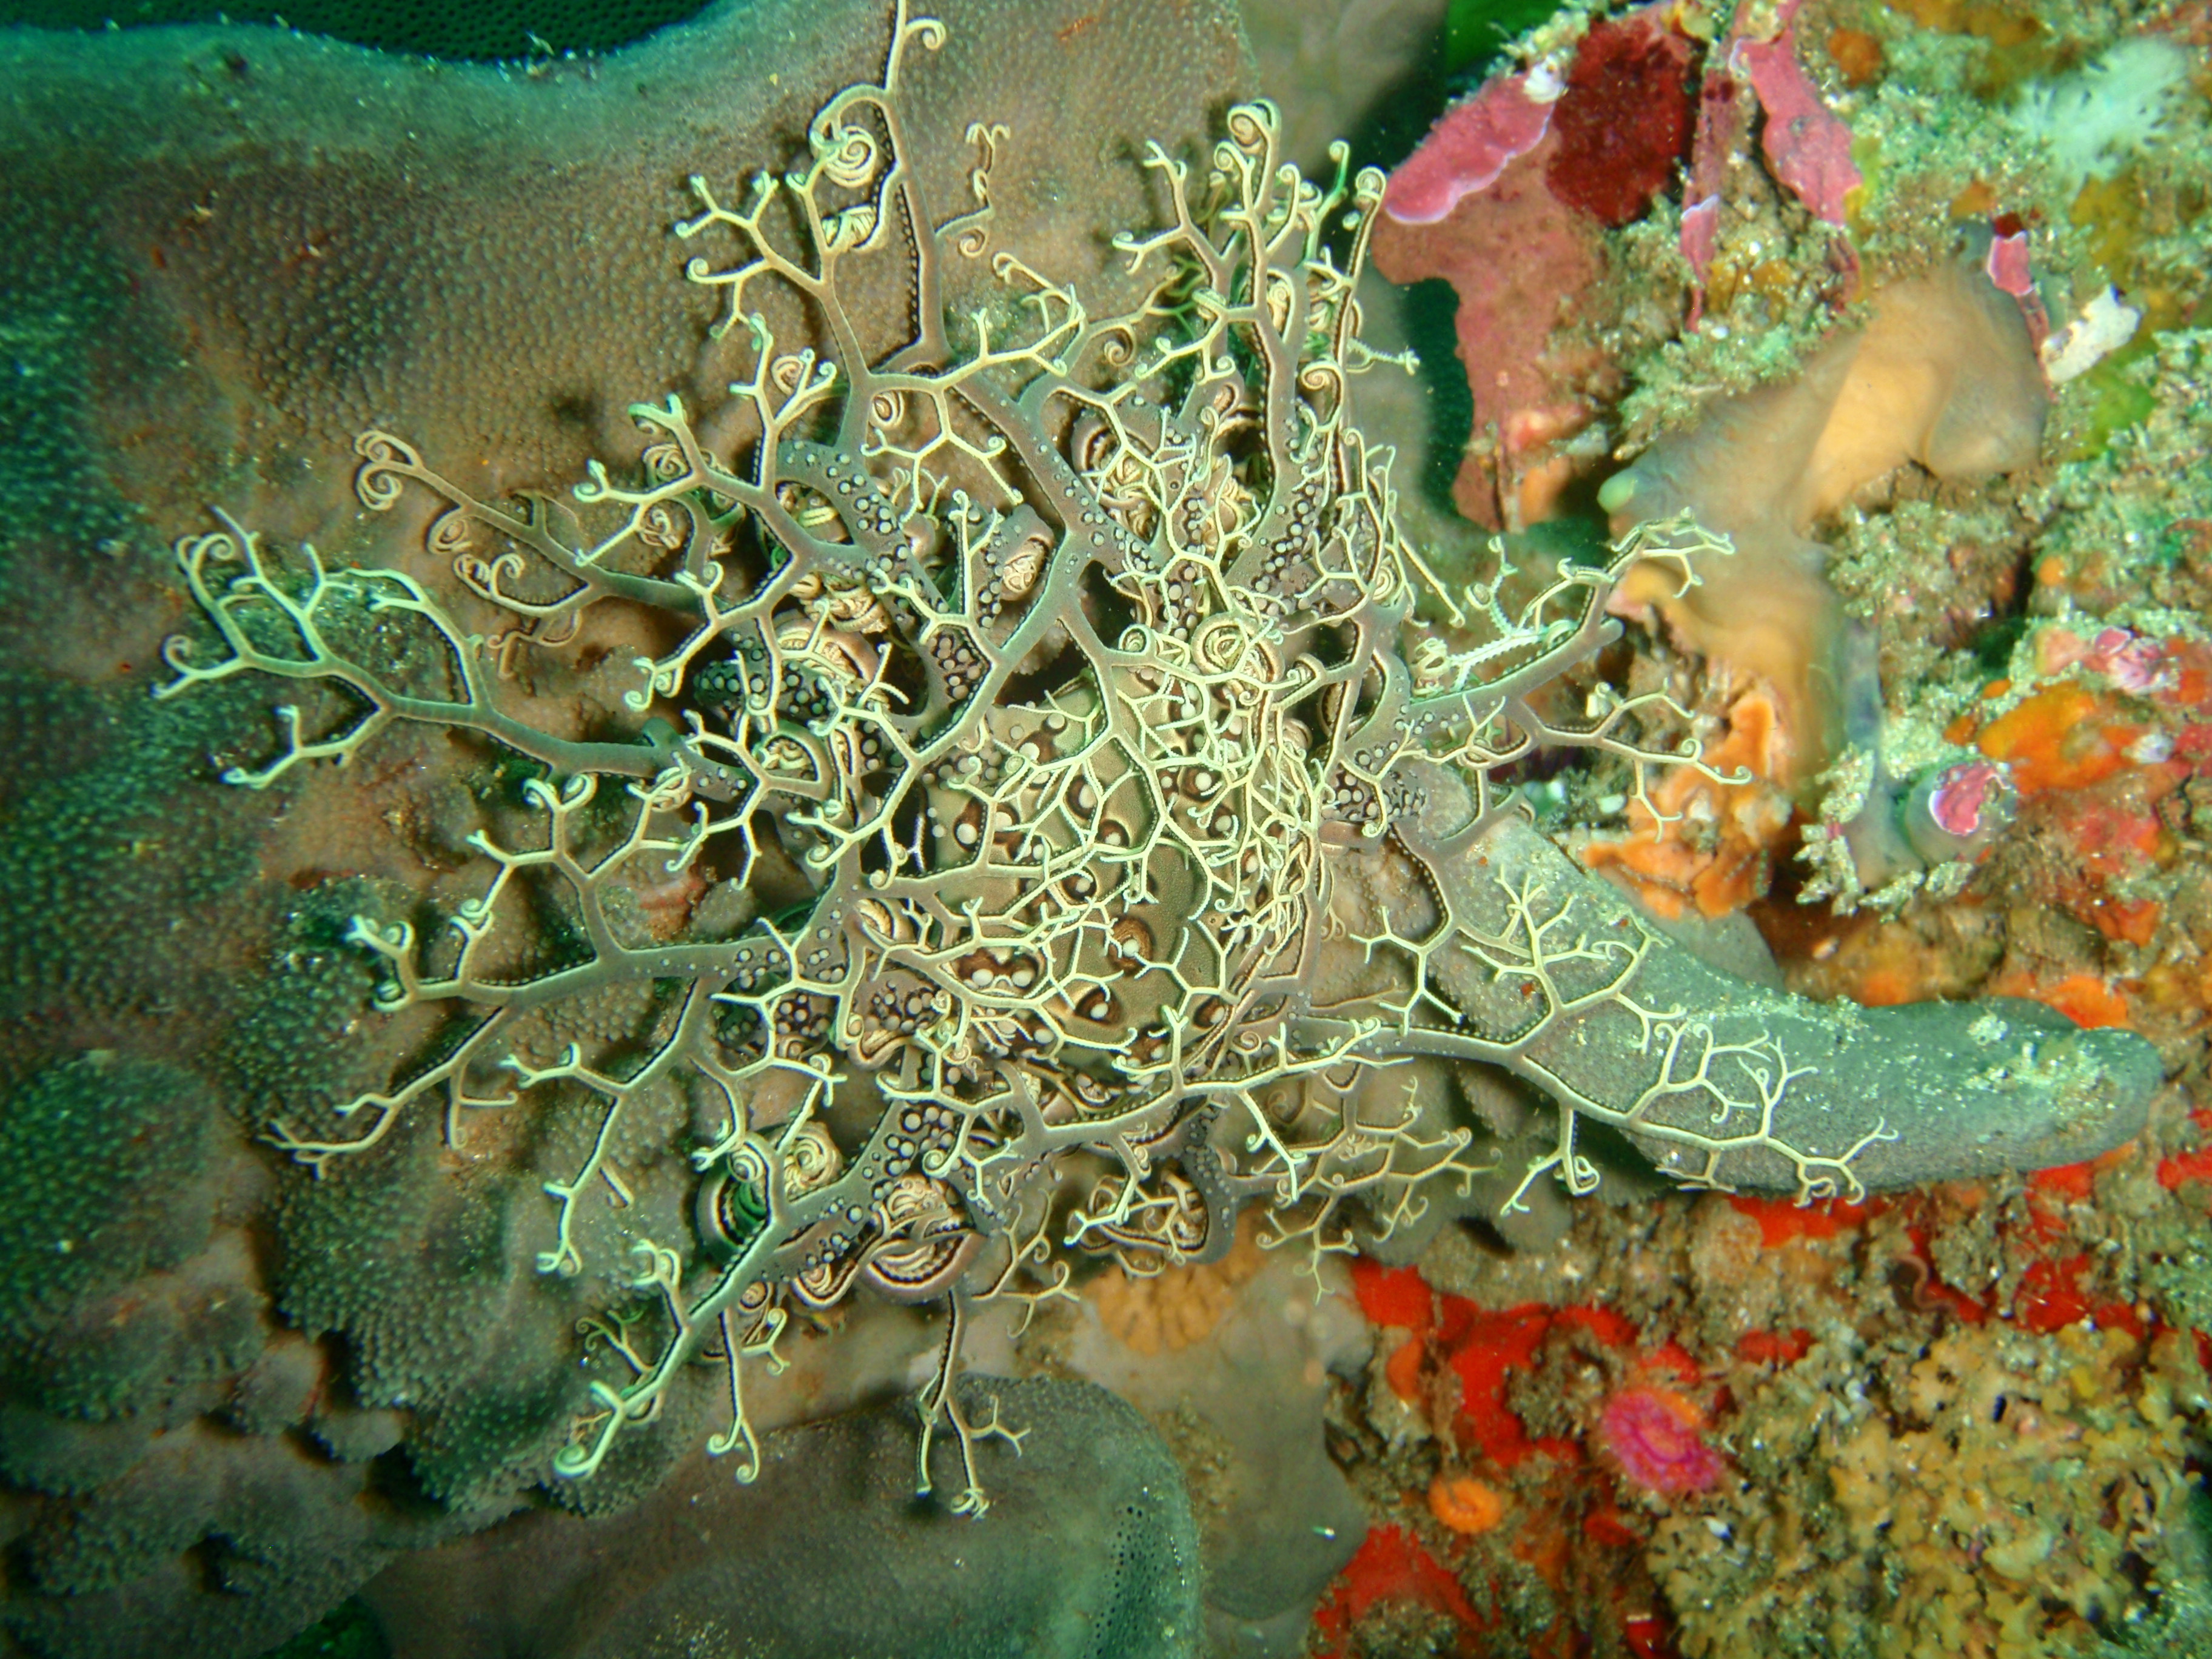 Basket star on sponge at Rheeder's Reef P2277147